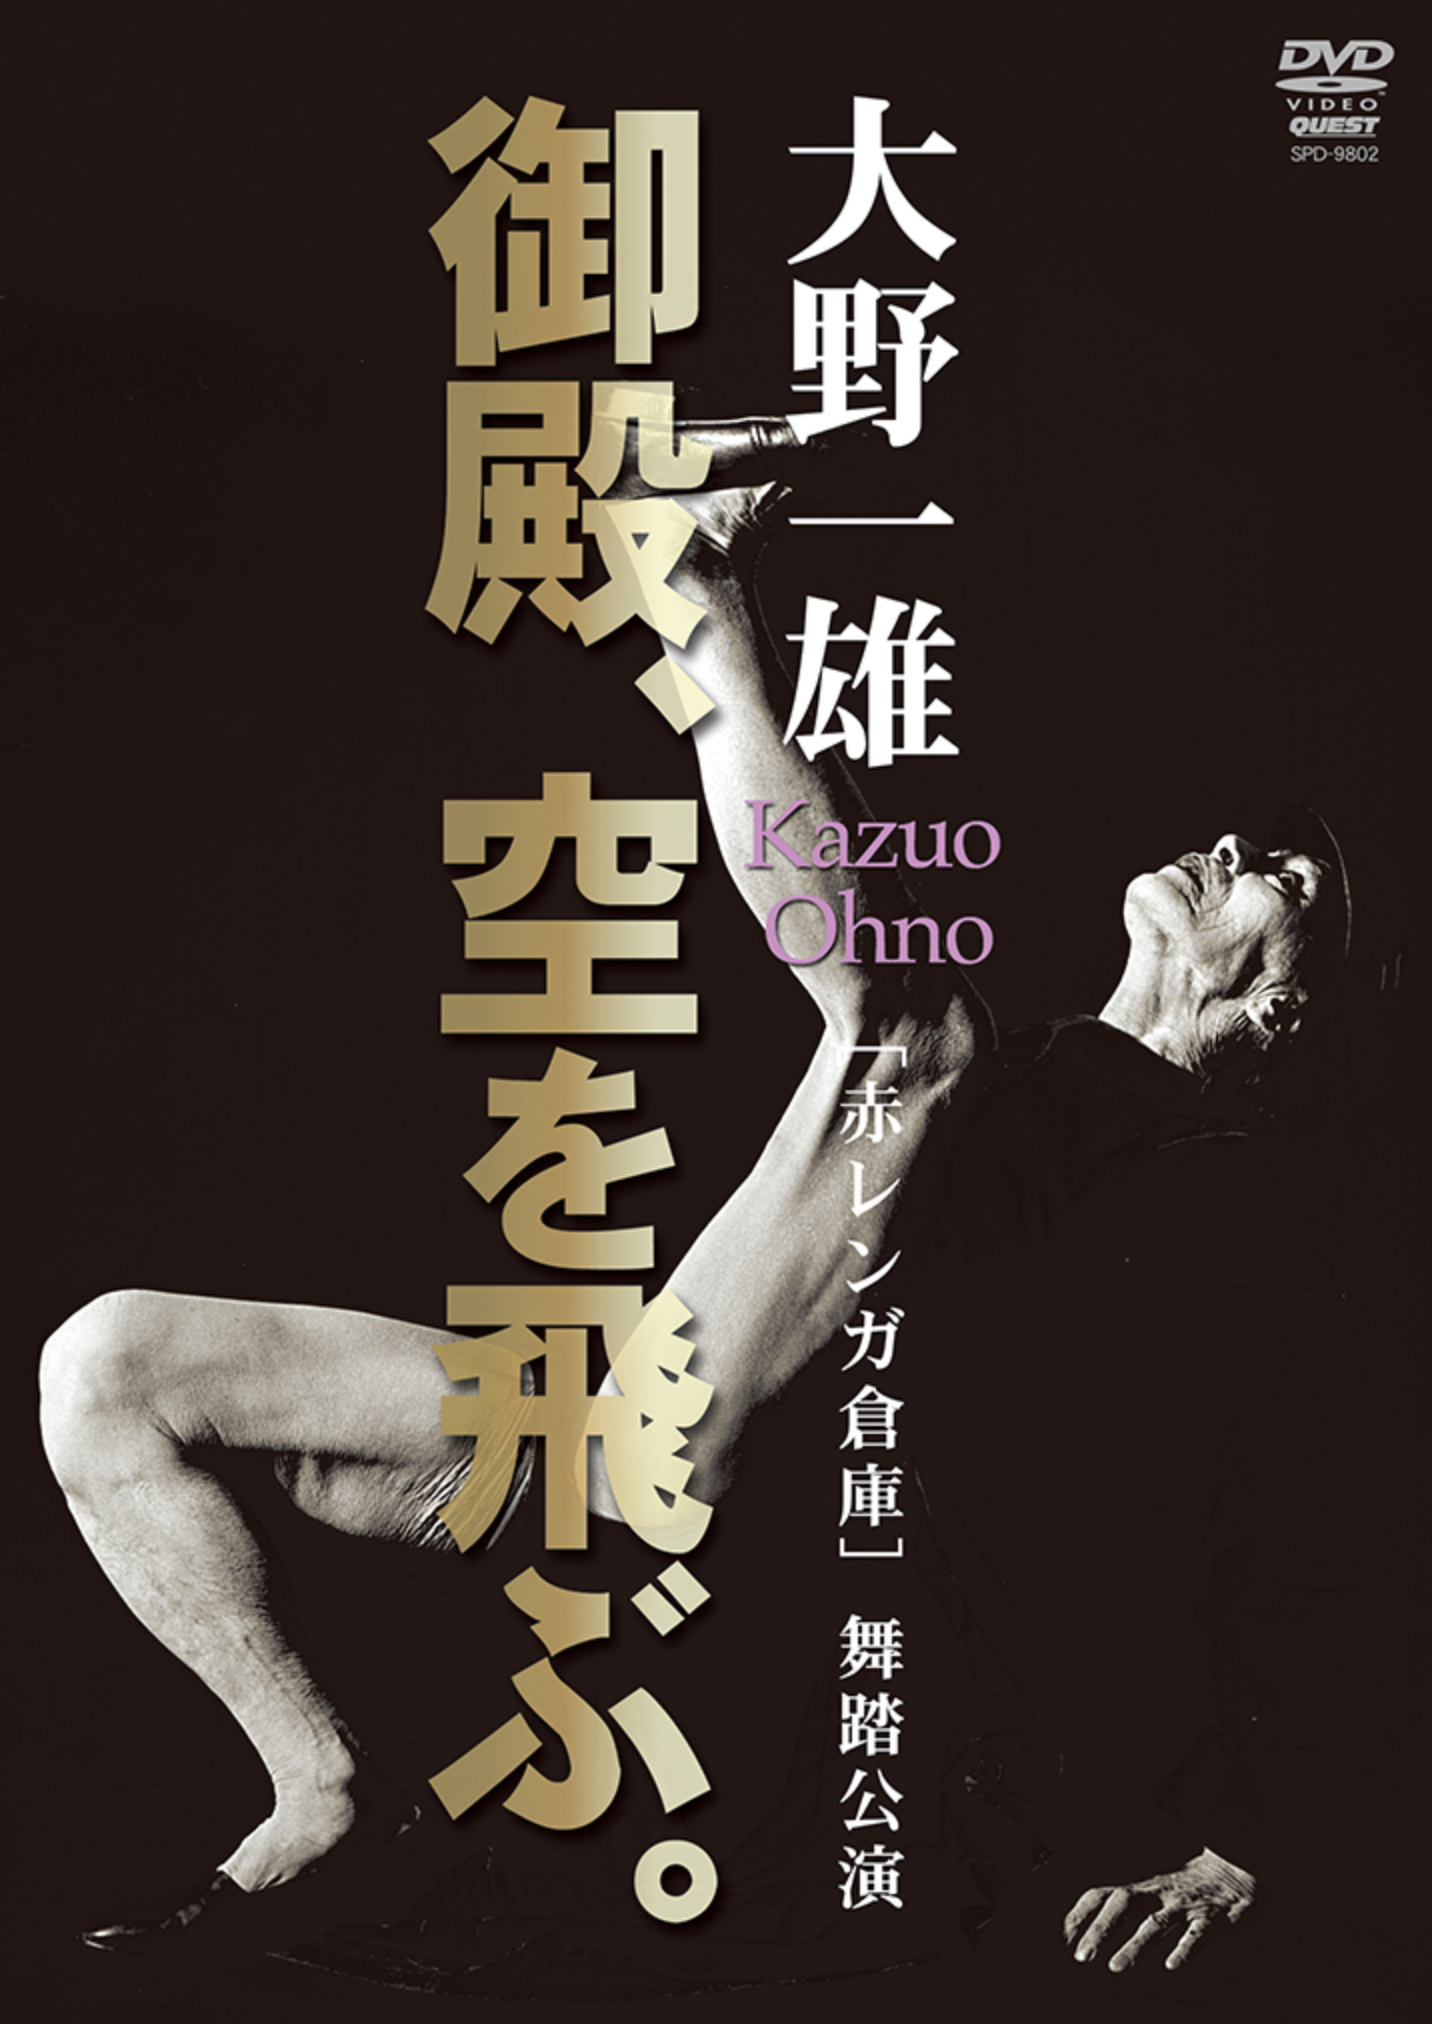 Butoh Dancer Kazuo Ohno DVD - Budovideos Inc